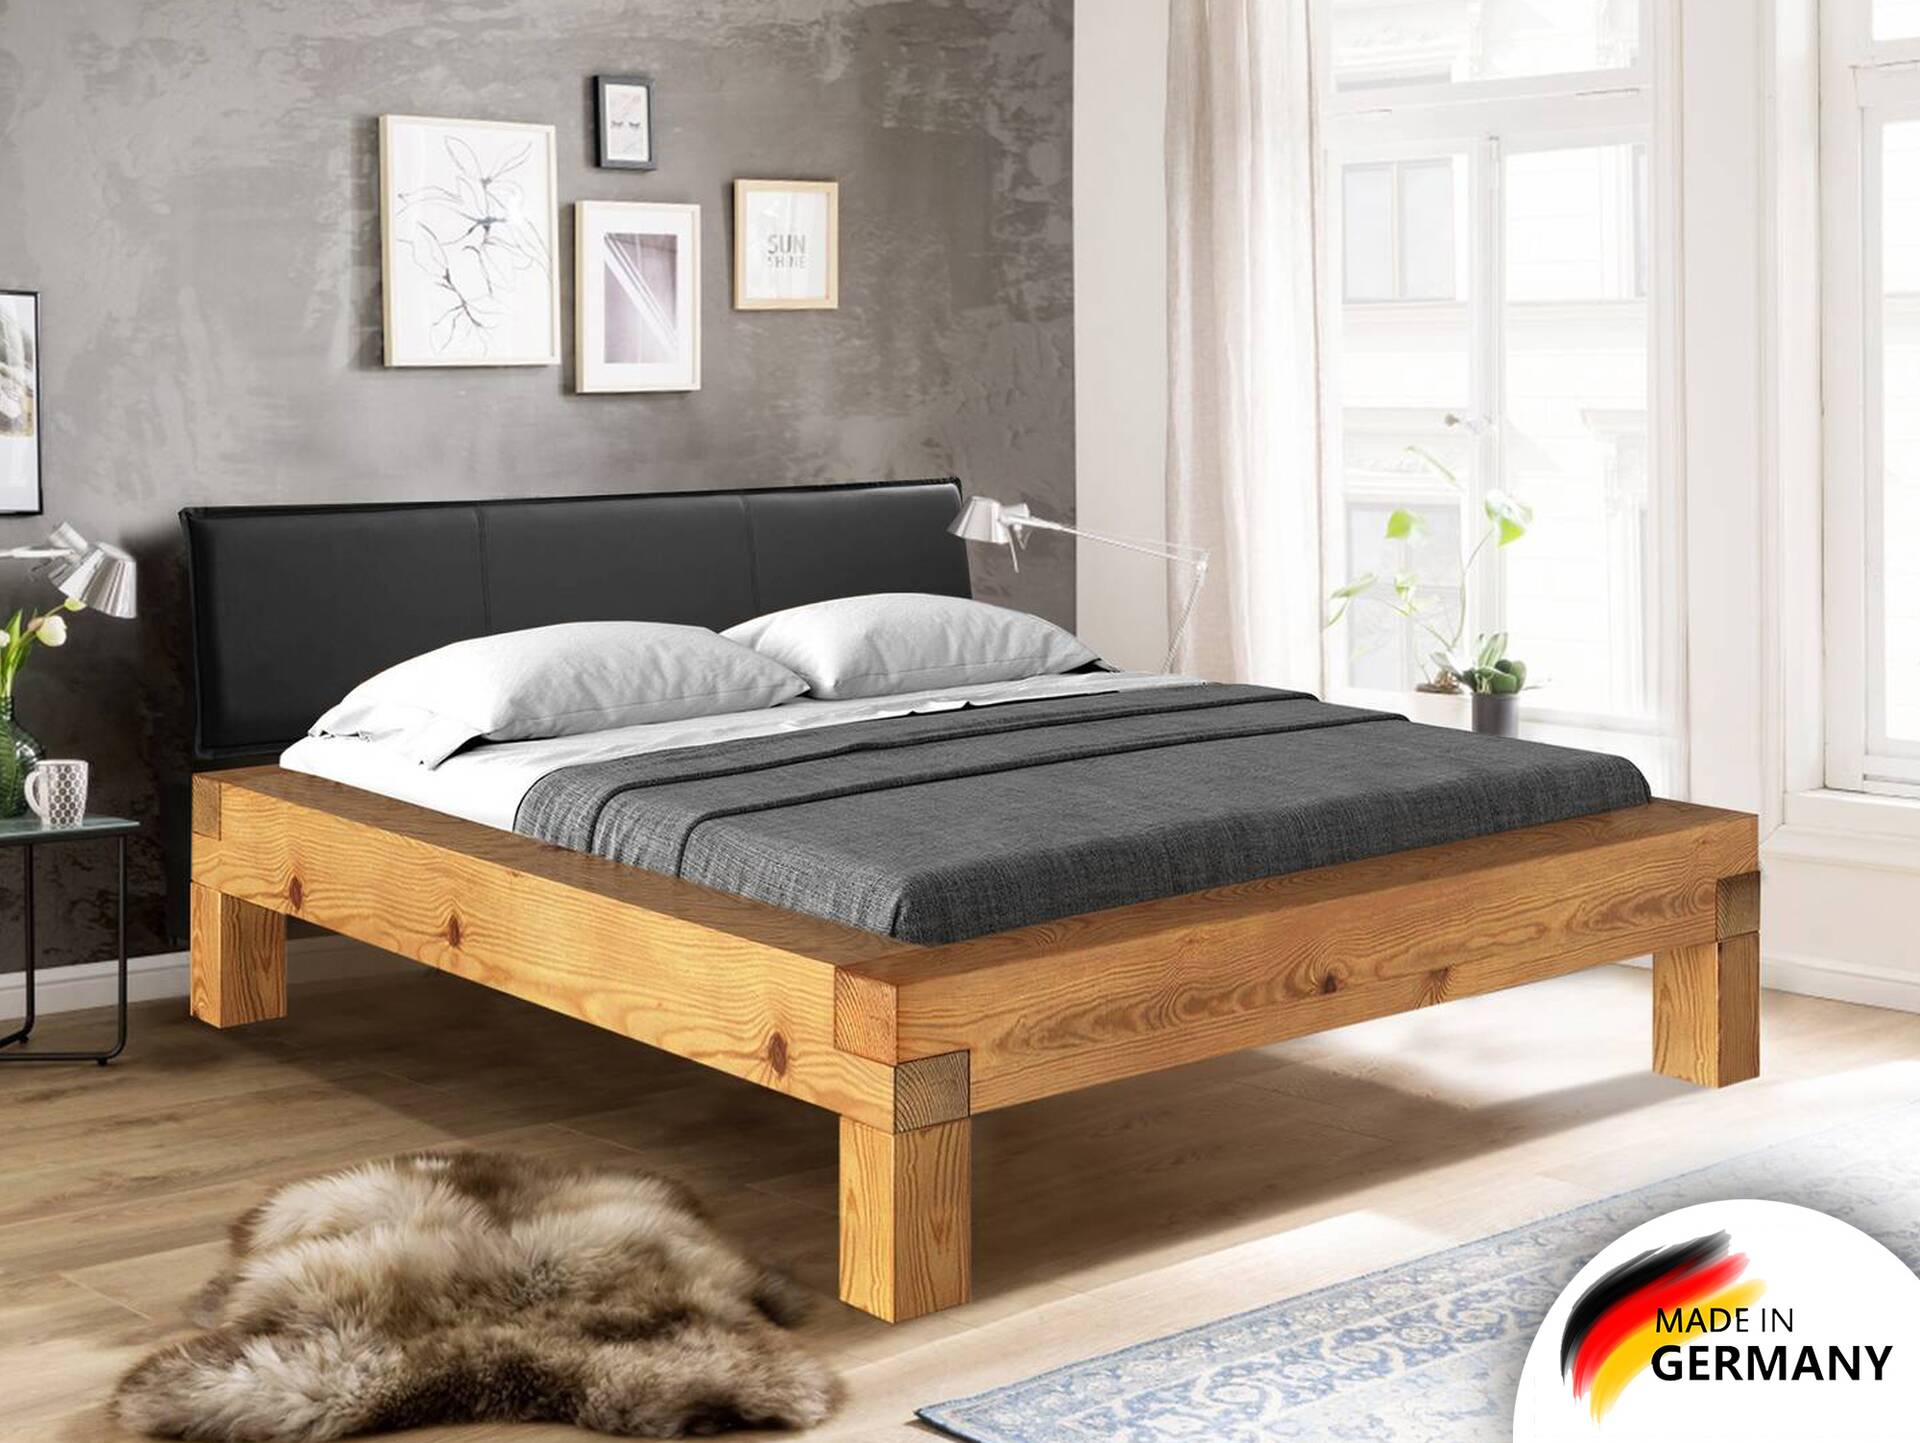 CURBY 4-Fuß-Balkenbett mit Polster-Kopfteil, Material Massivholz, Thermo-Fichte 180 x 200 cm | natur | Stoff Anthrazit | Komforthöhe